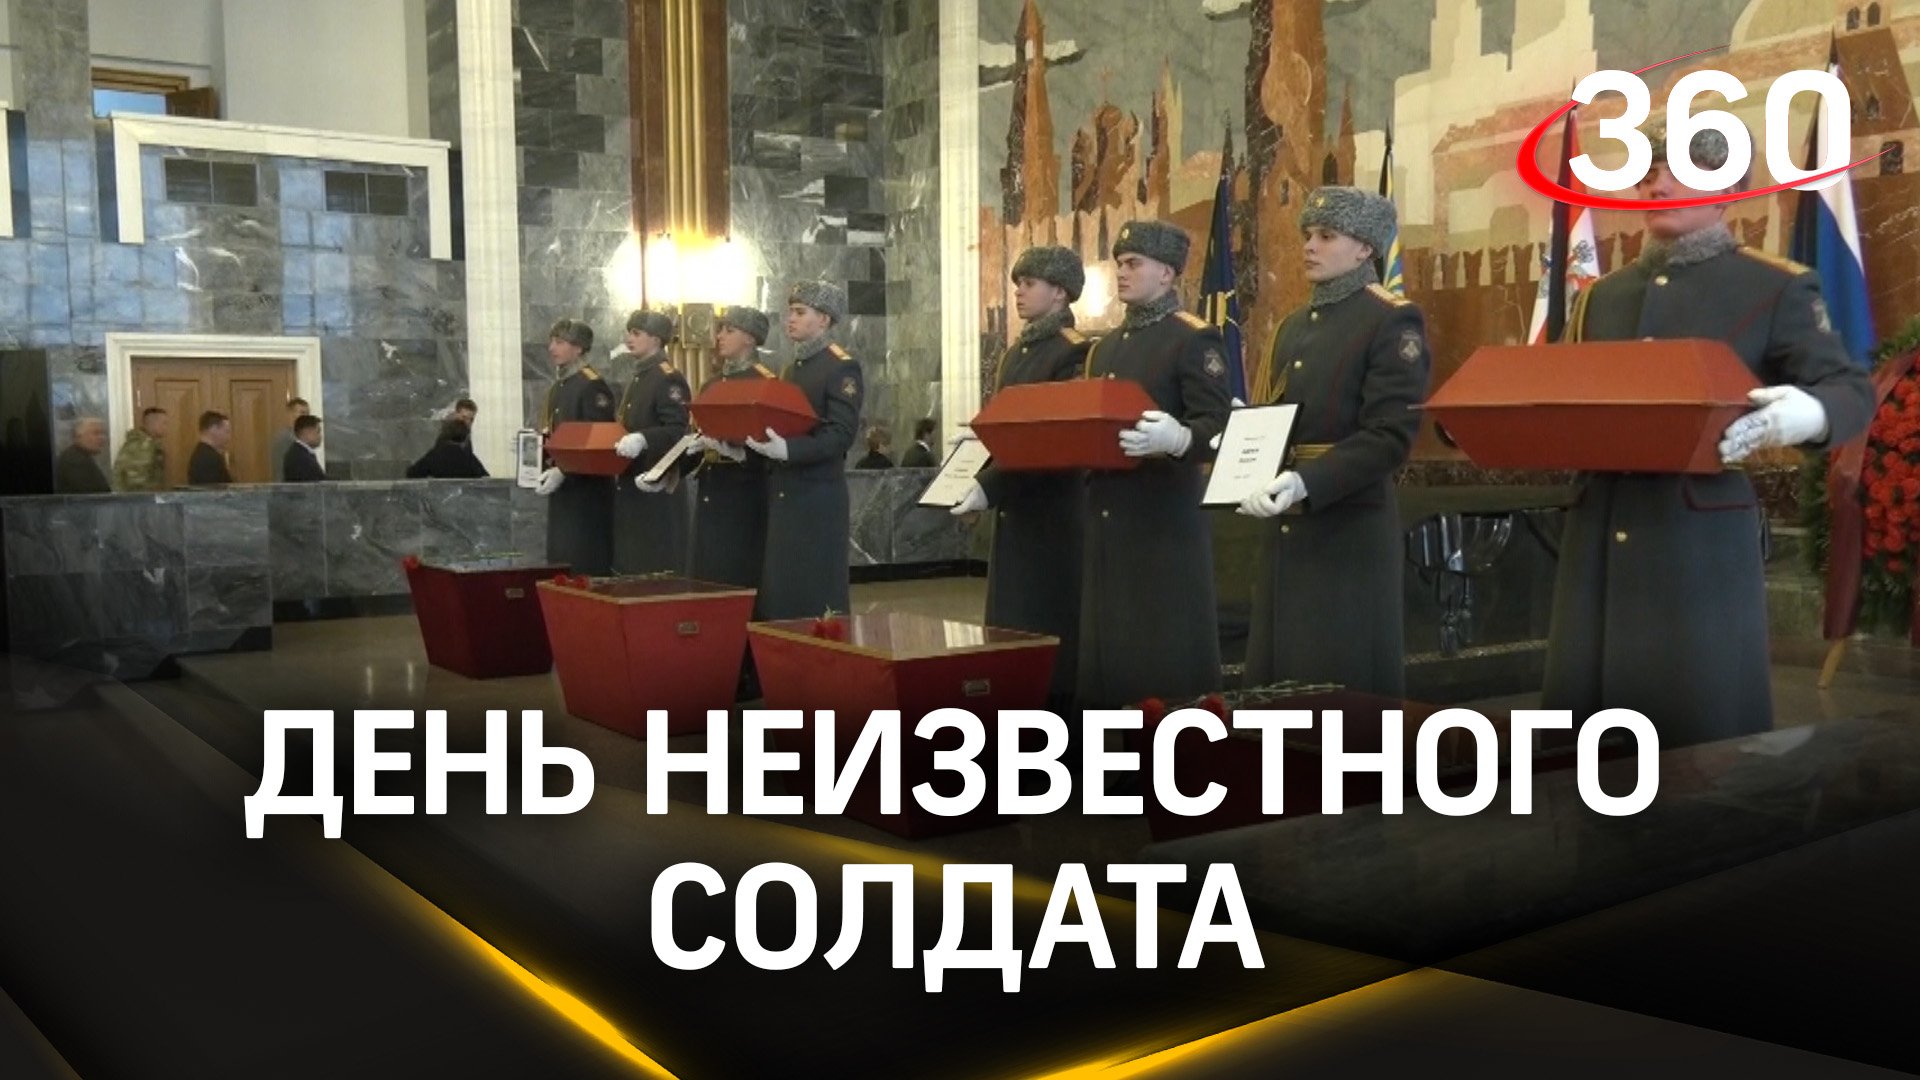 В память о героях: церемония передачи малой Родине останков советских воинов в Мытищах